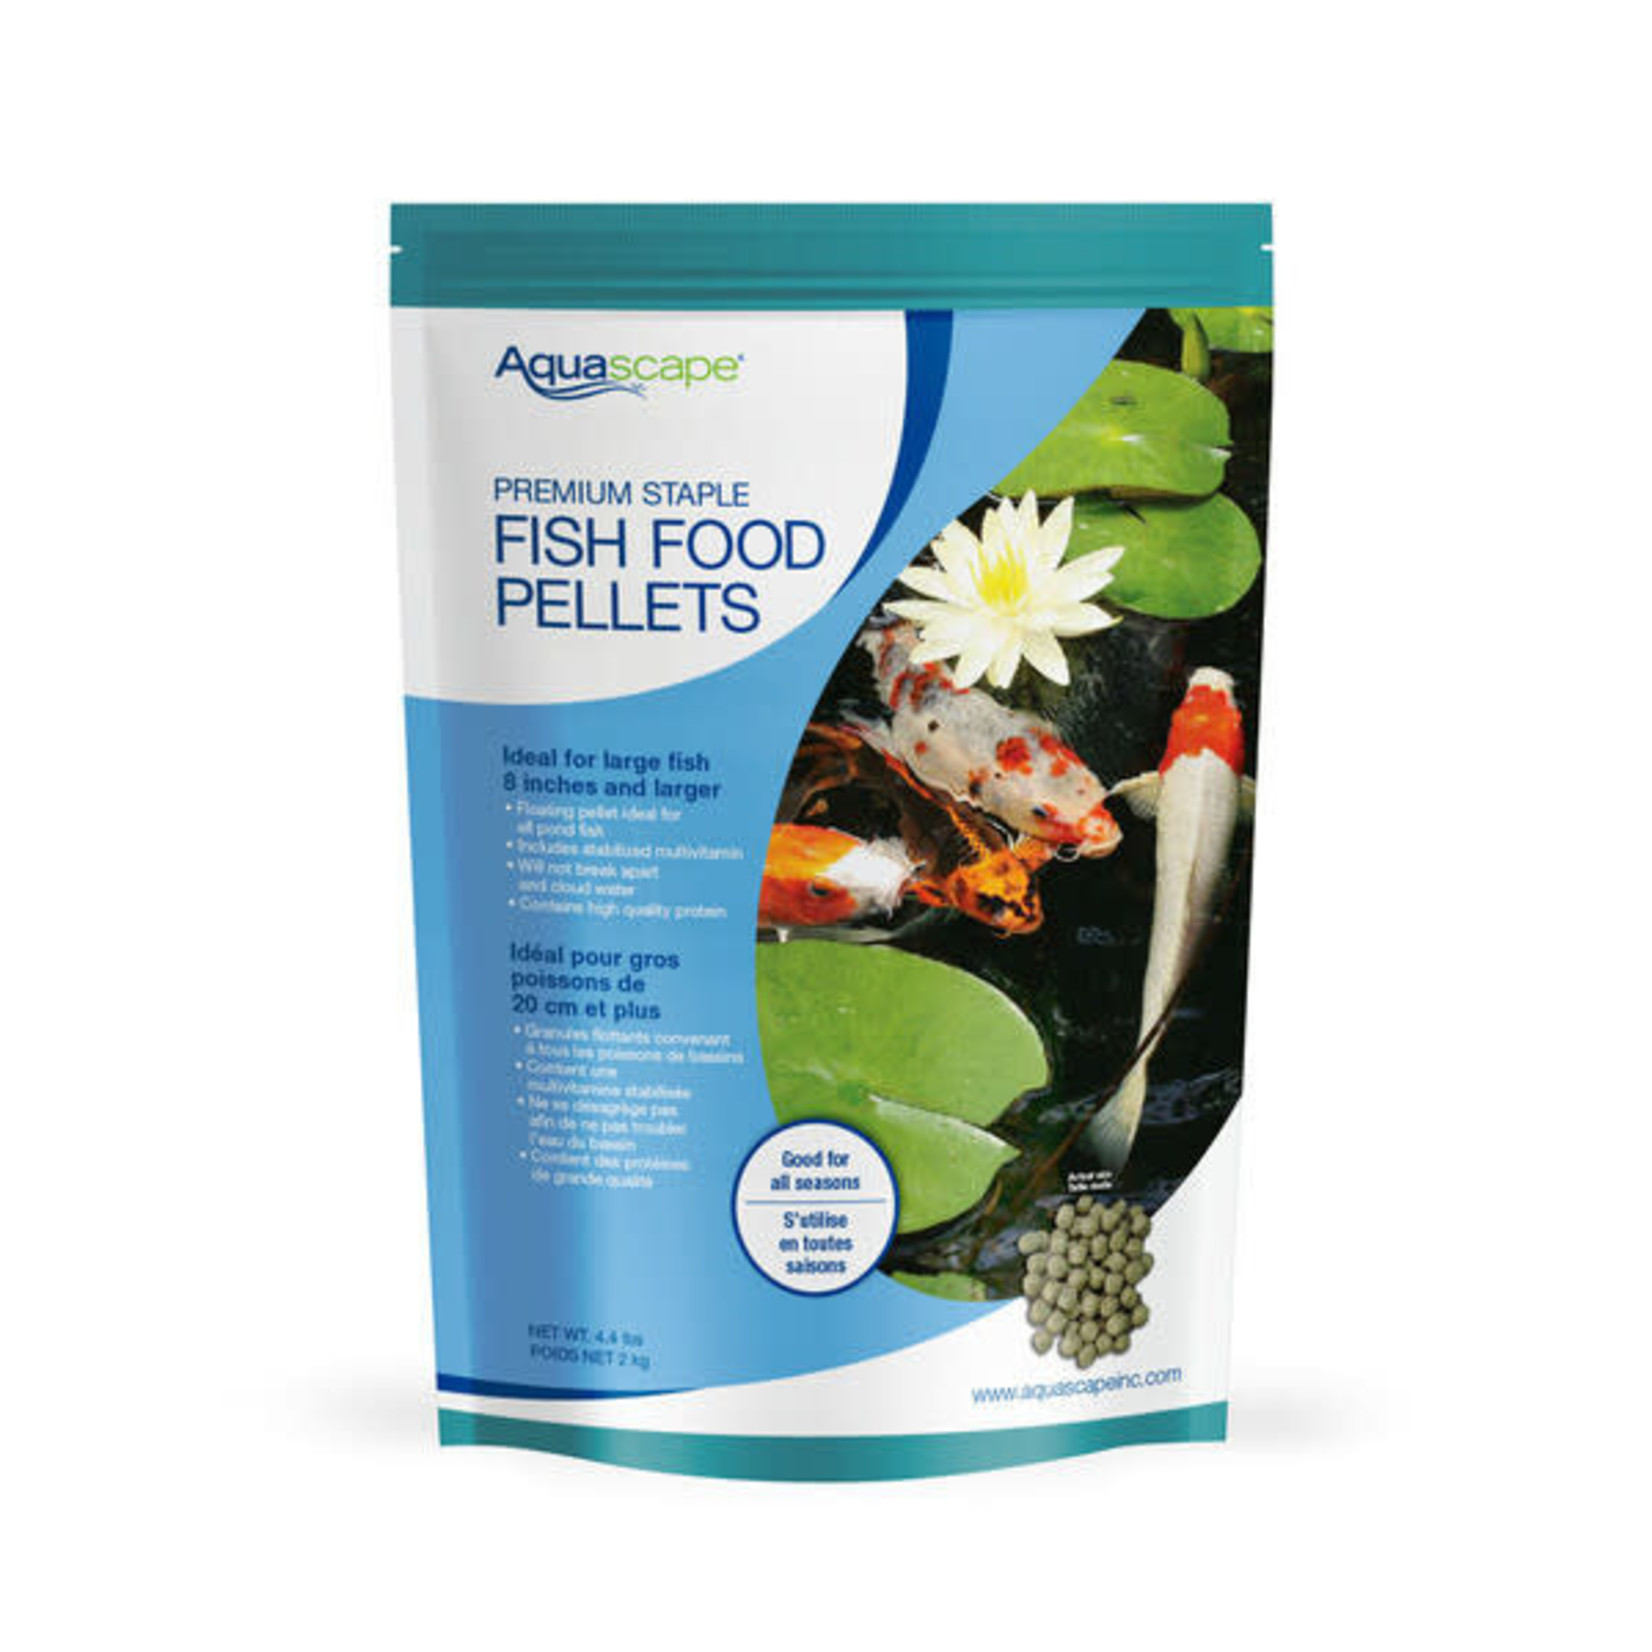 Aquascape Premium Staple Fish Food Pellets - Large Pellets - 4.4 lbs / 2 kg